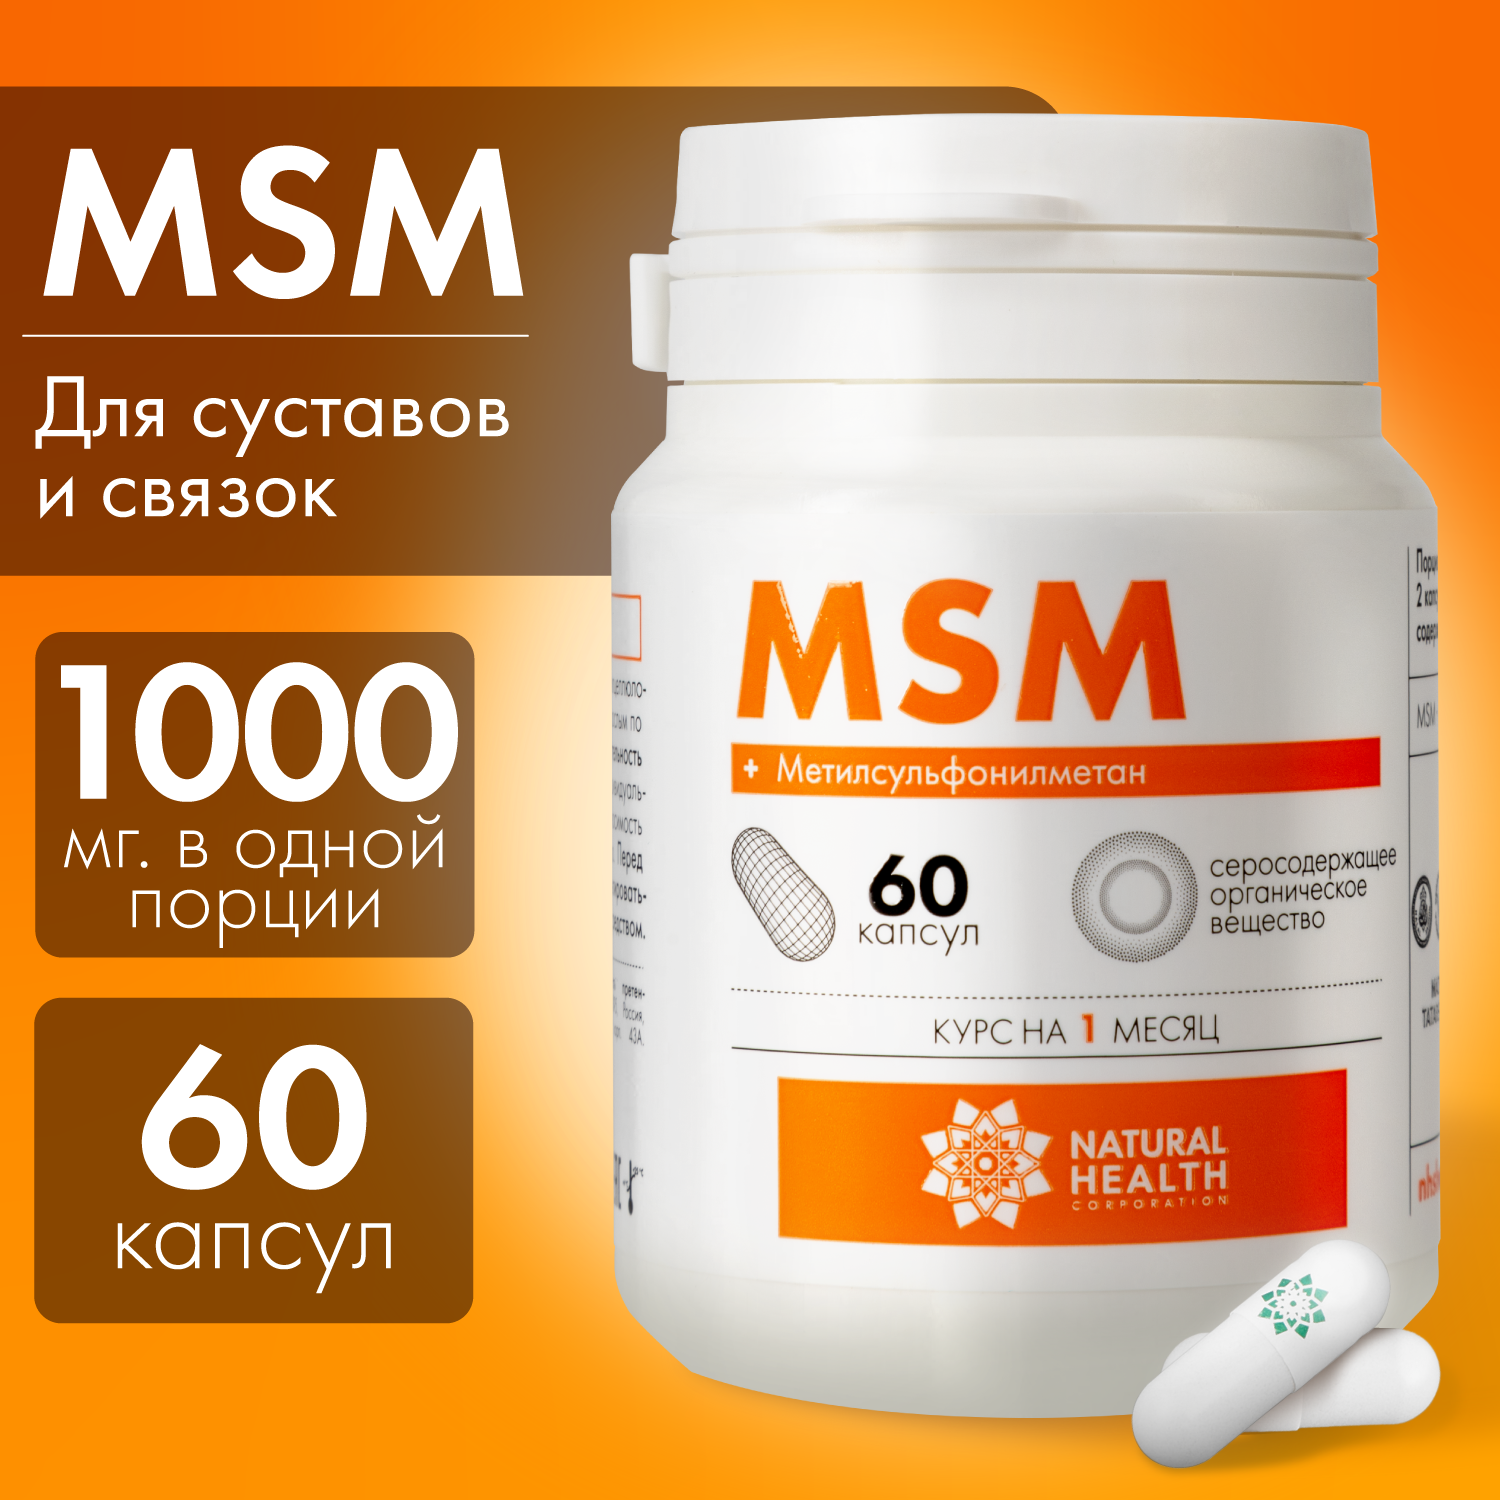 MSM - витамин для суставов хрящей связок; метилсульфонилметан - серосодержащее вещество 1000 мг Natural Health Натуральное Здоровье